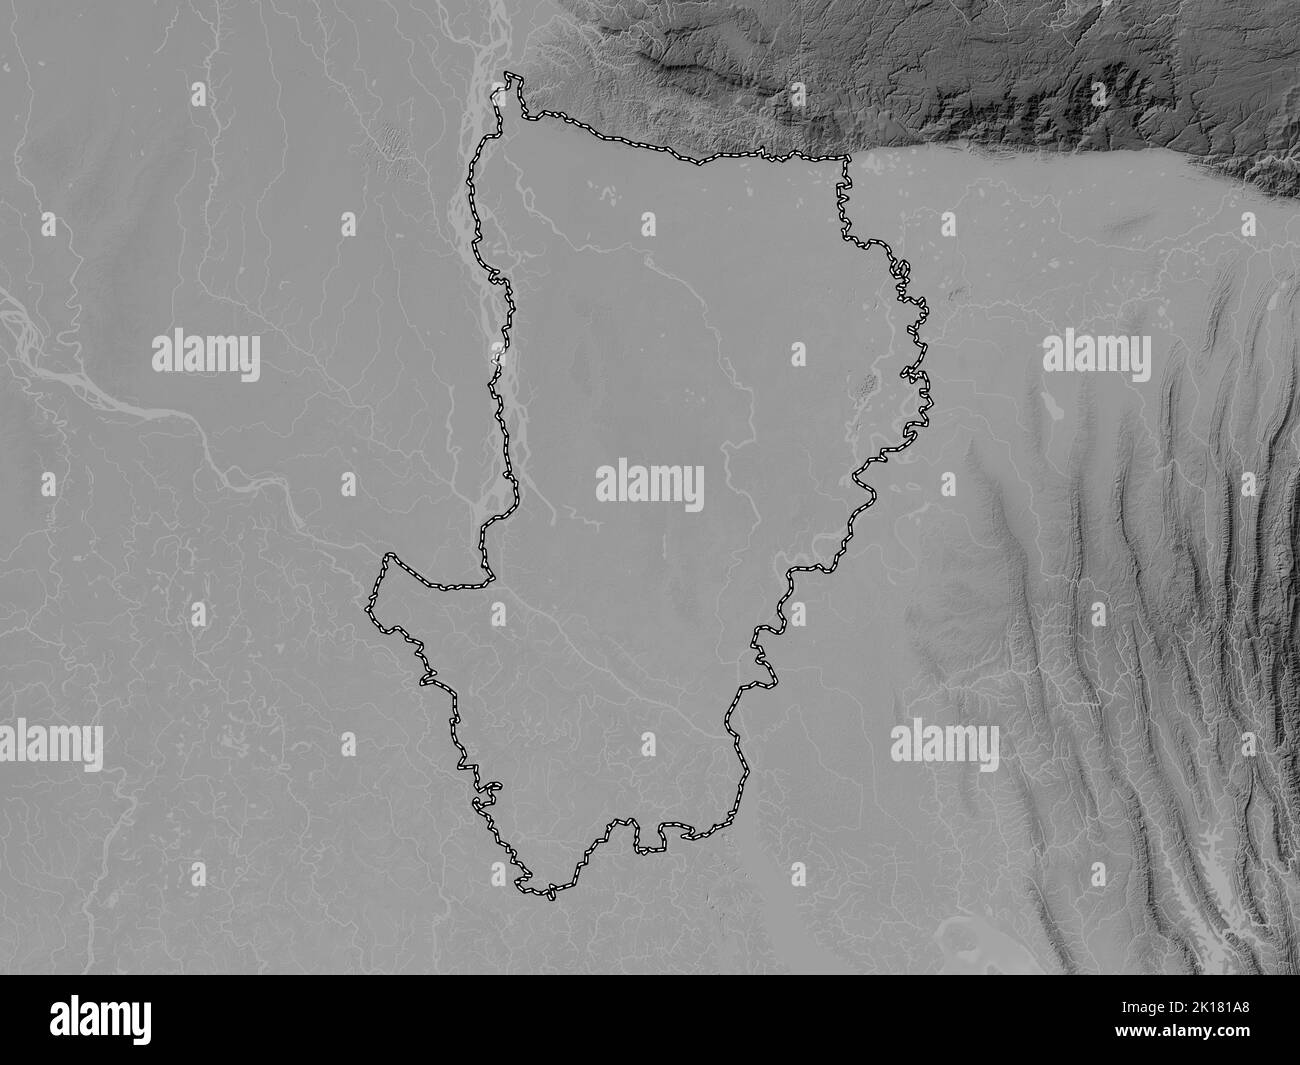 Dhaka, division du Bangladesh. Carte d'altitude en niveaux de gris avec lacs et rivières Banque D'Images